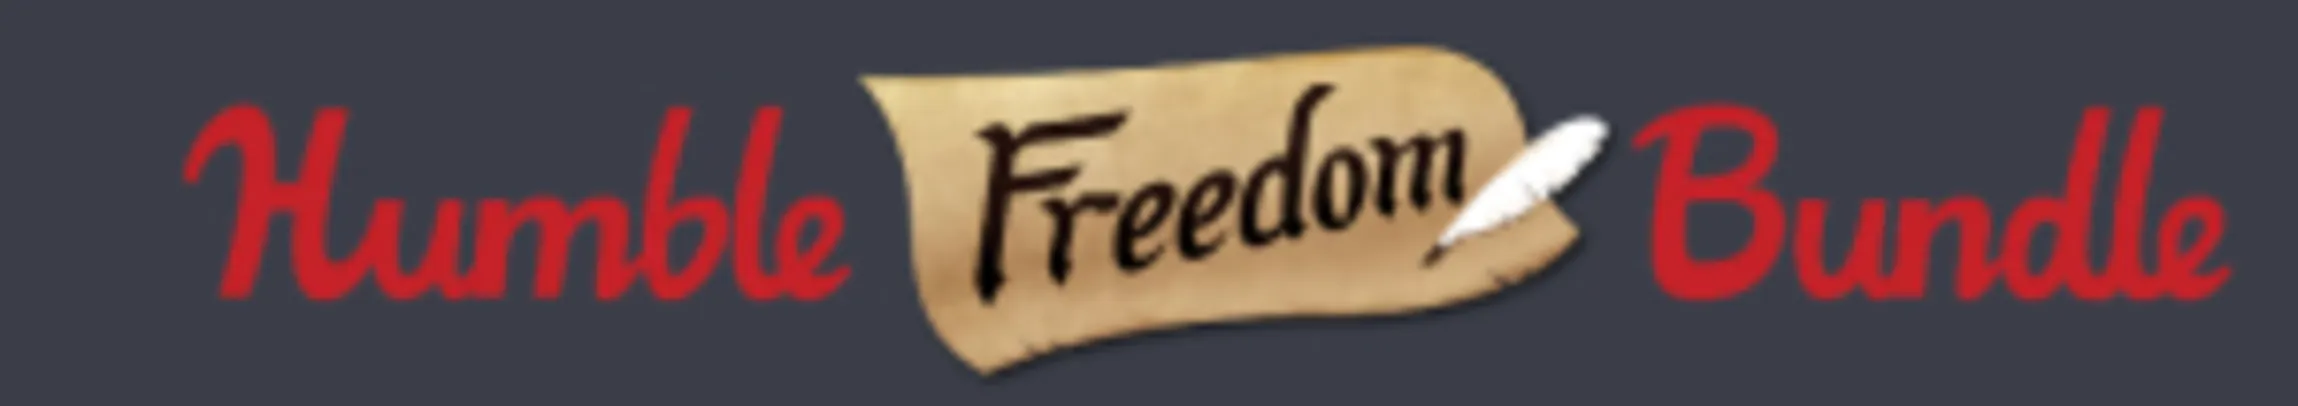 Humble Freedom Bundle ( 40 jogos e 07 livros e + jogos futuros ) -  Steam PC - U$ 30 ou R$ 93,30